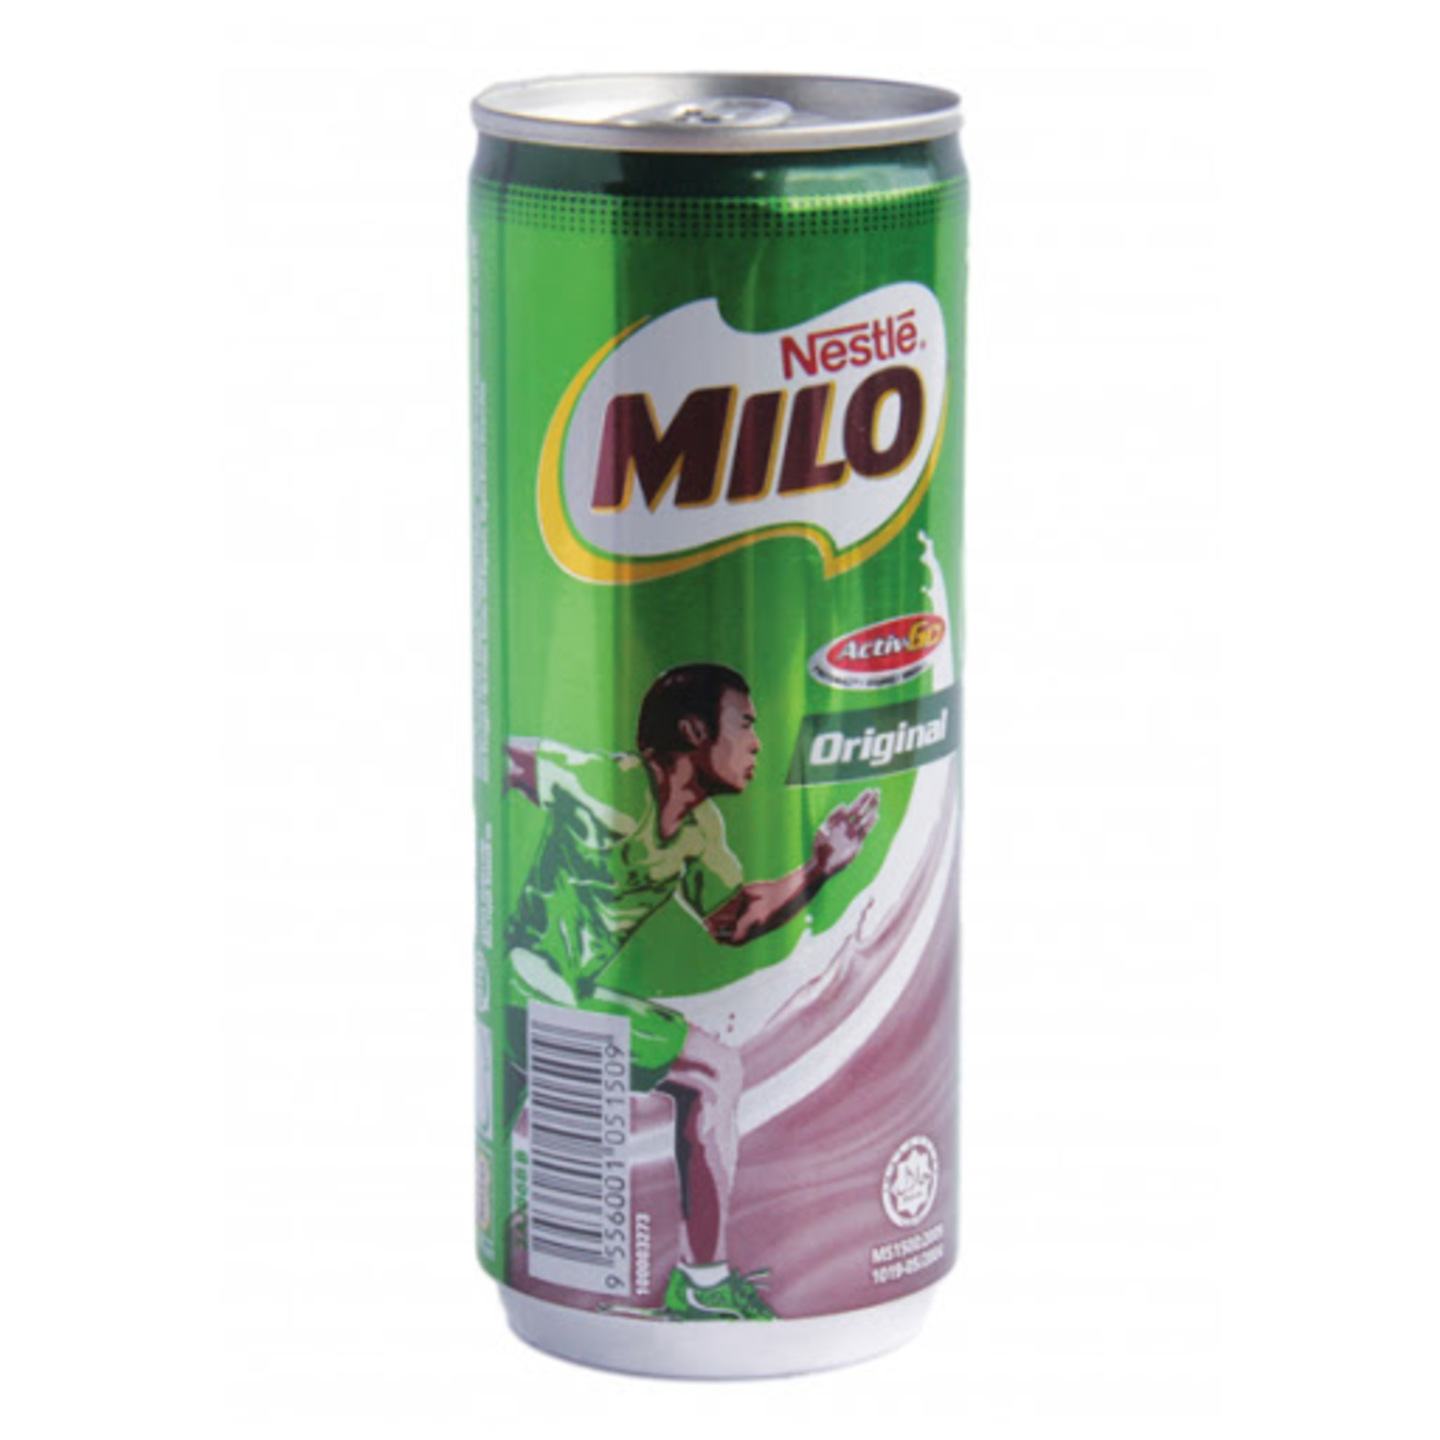 Nescafe Milo